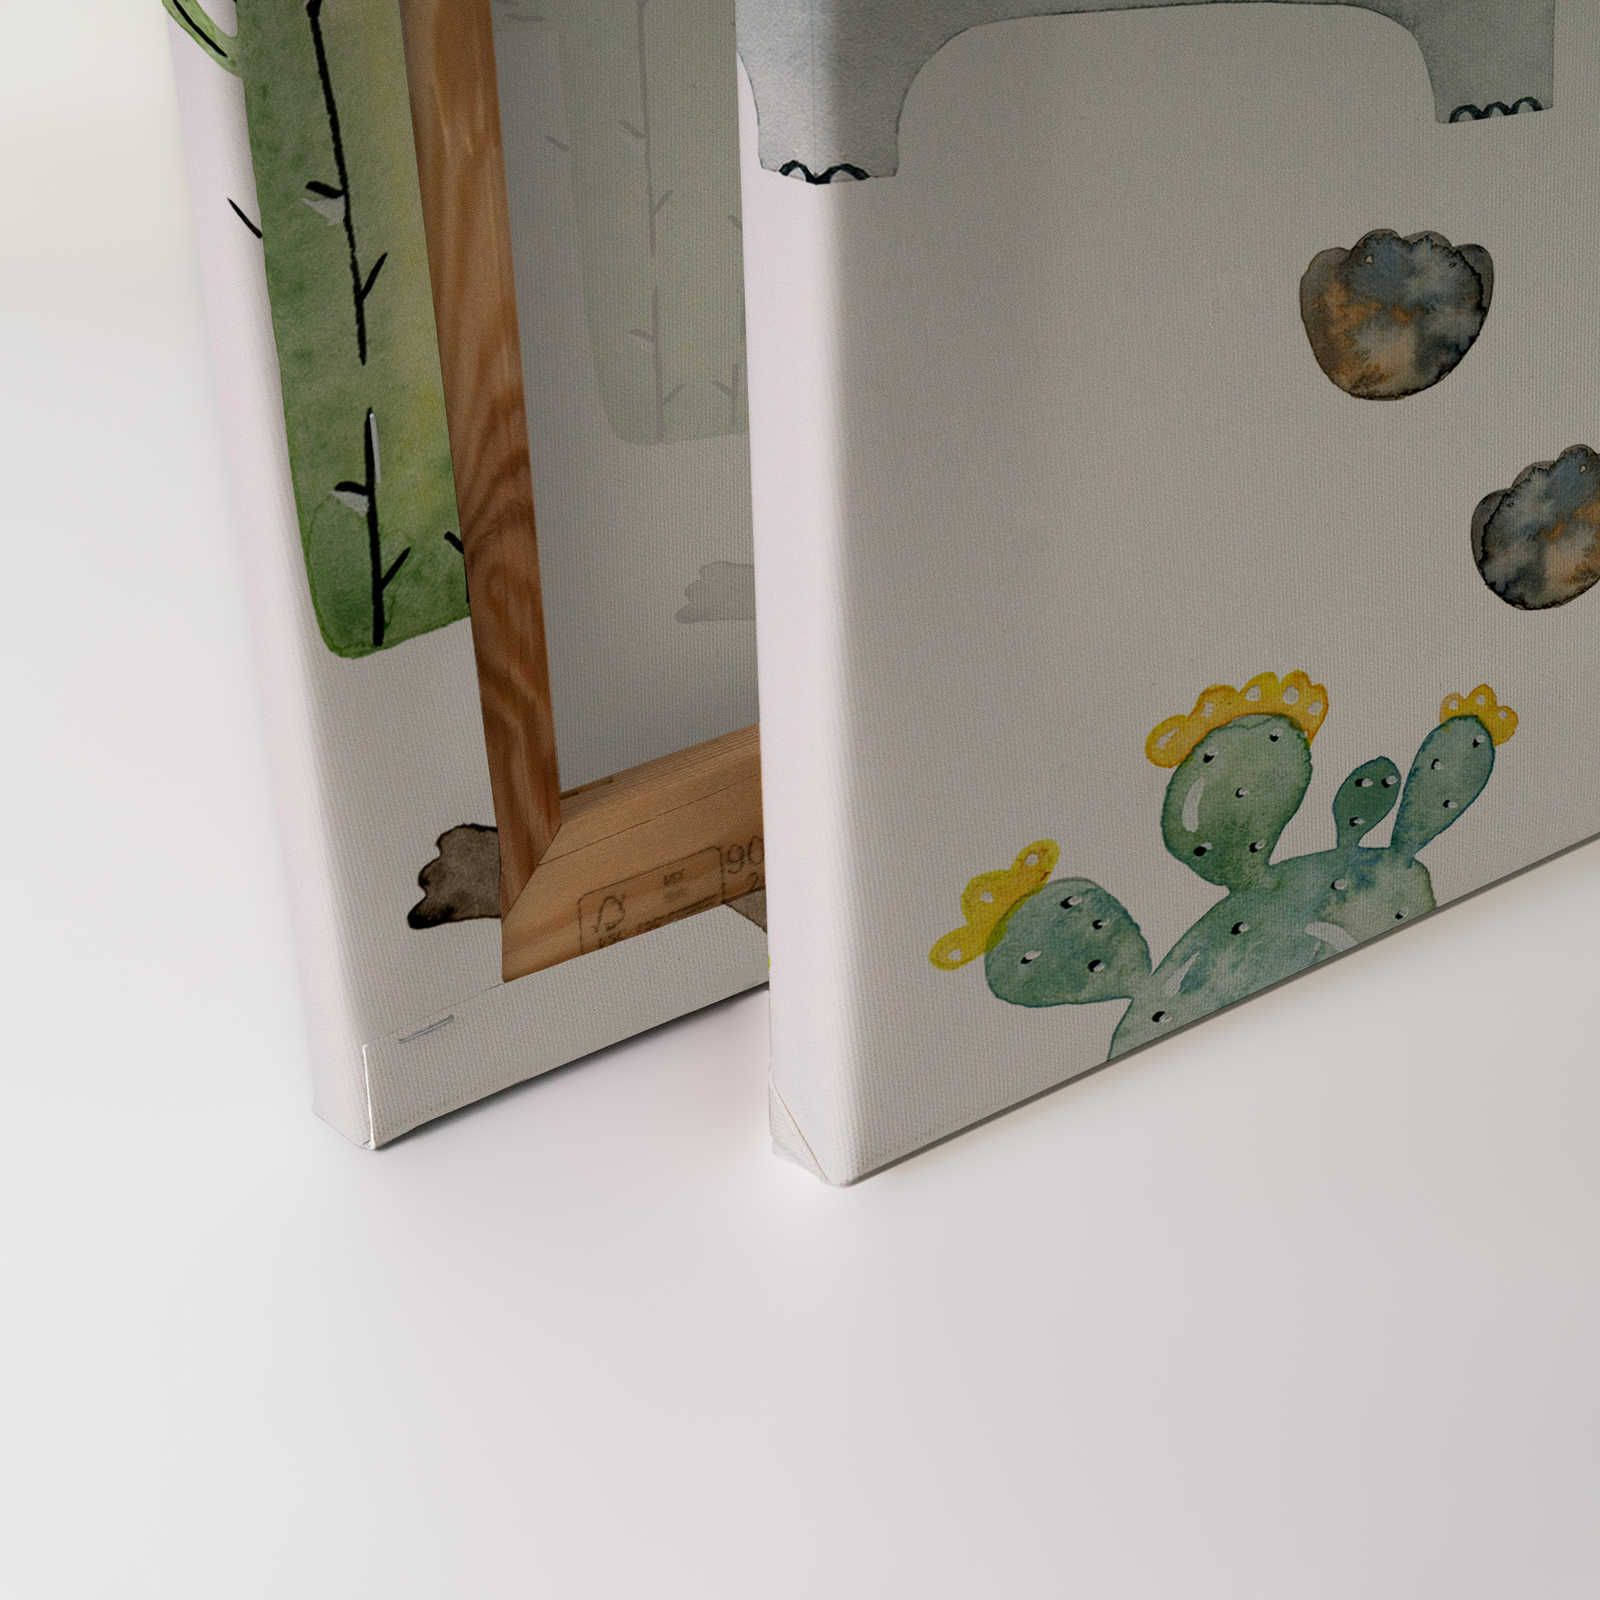             Toile avec animaux et cactus - 120 cm x 80 cm
        